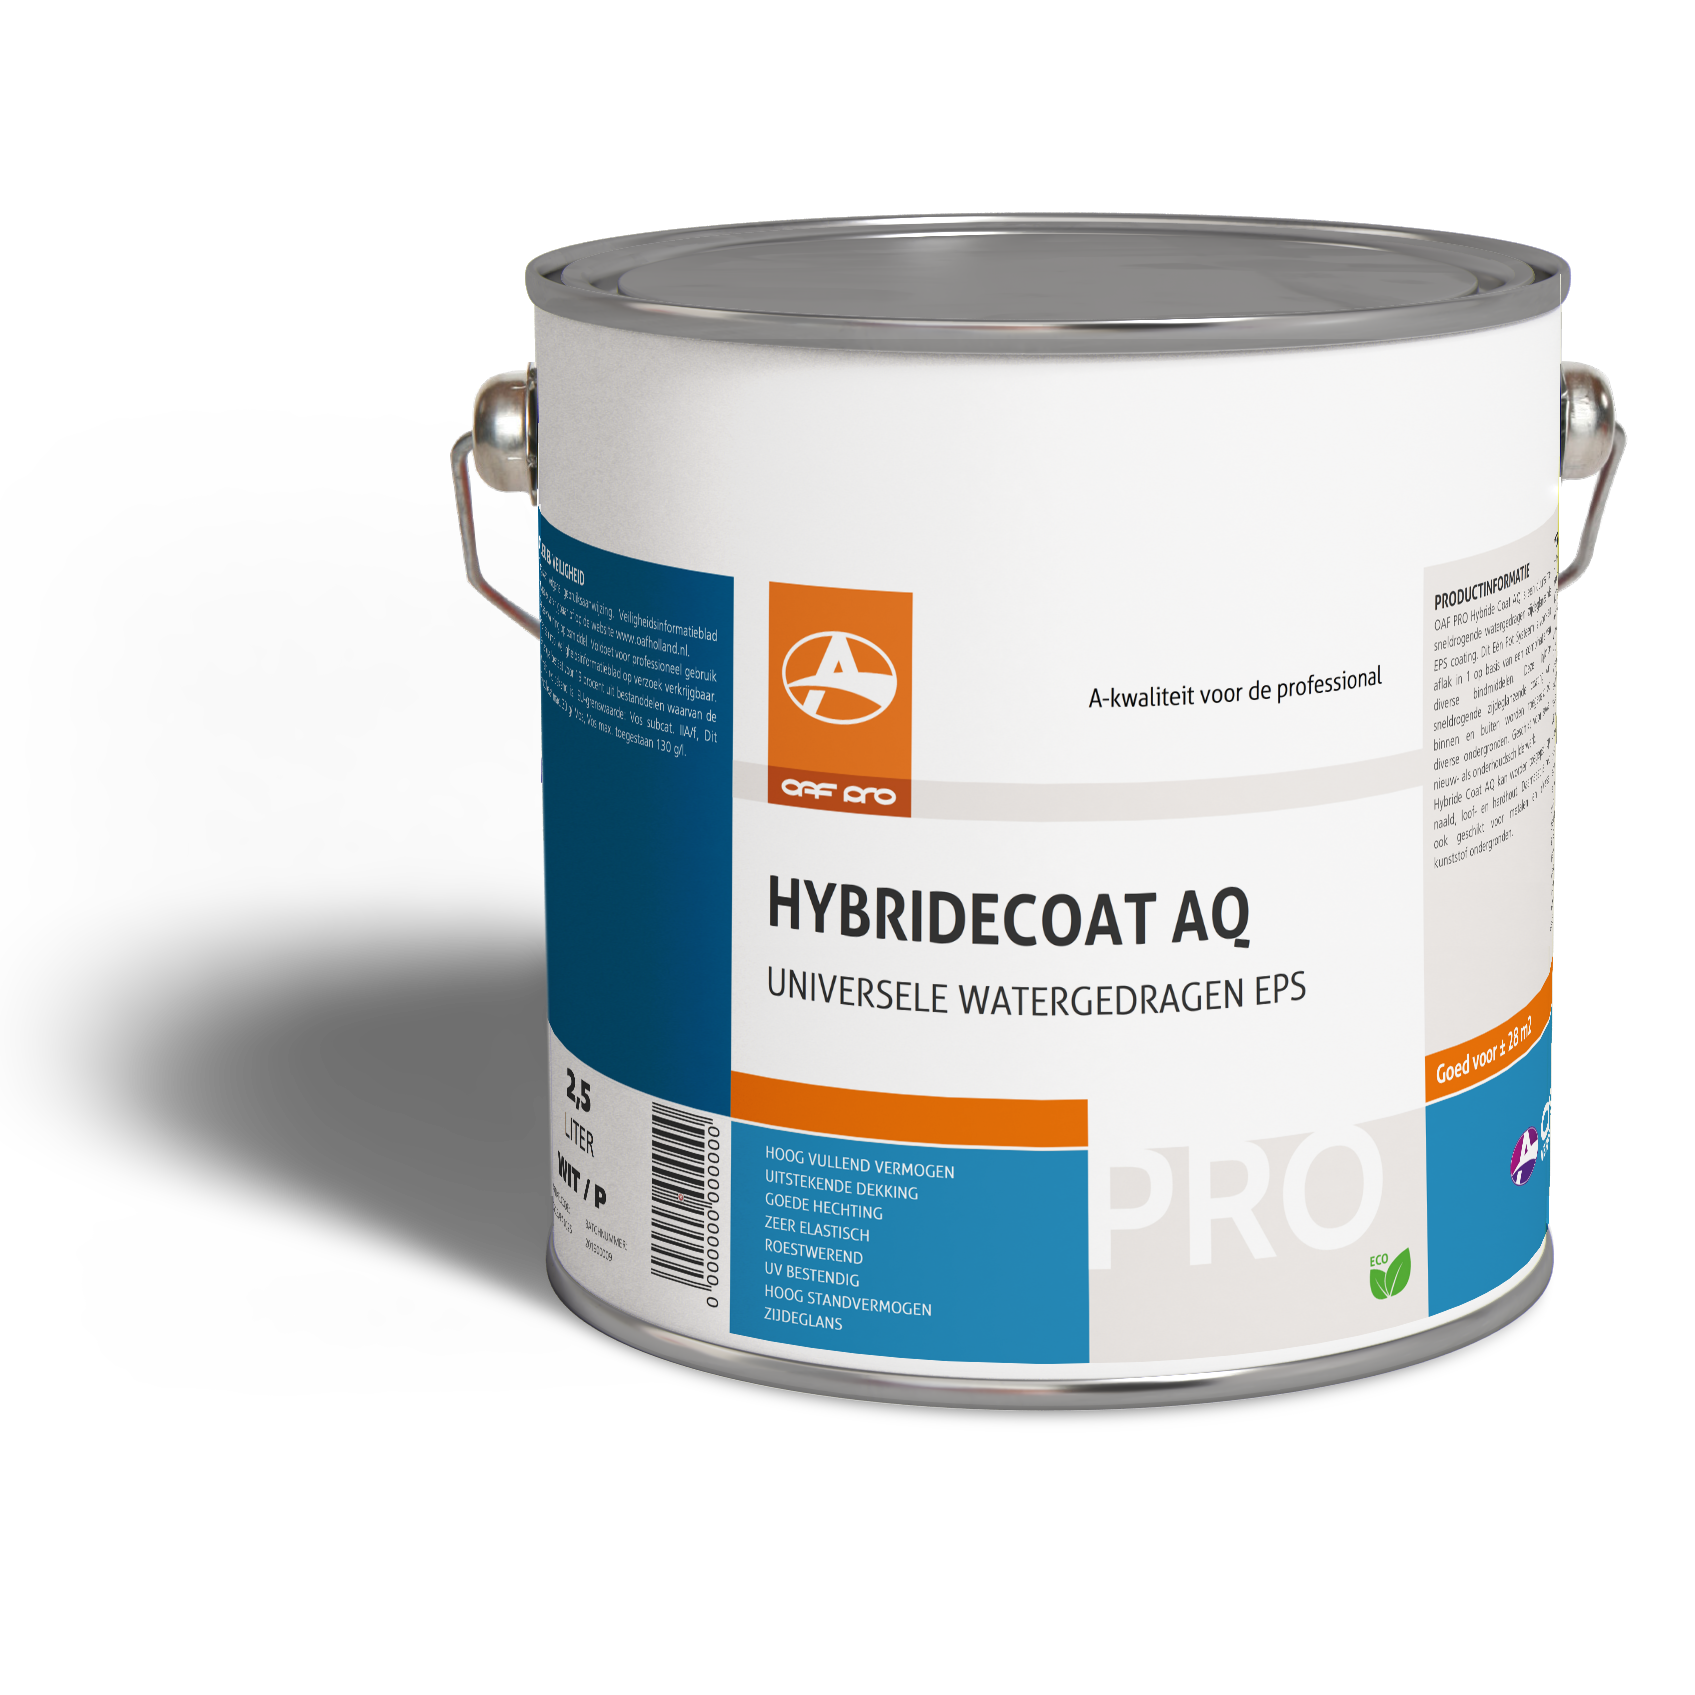 OAF PRO Hybridecoat AQ watergedragen afwerking voor diverse ondergronden zoals metaal, kunststof en hout